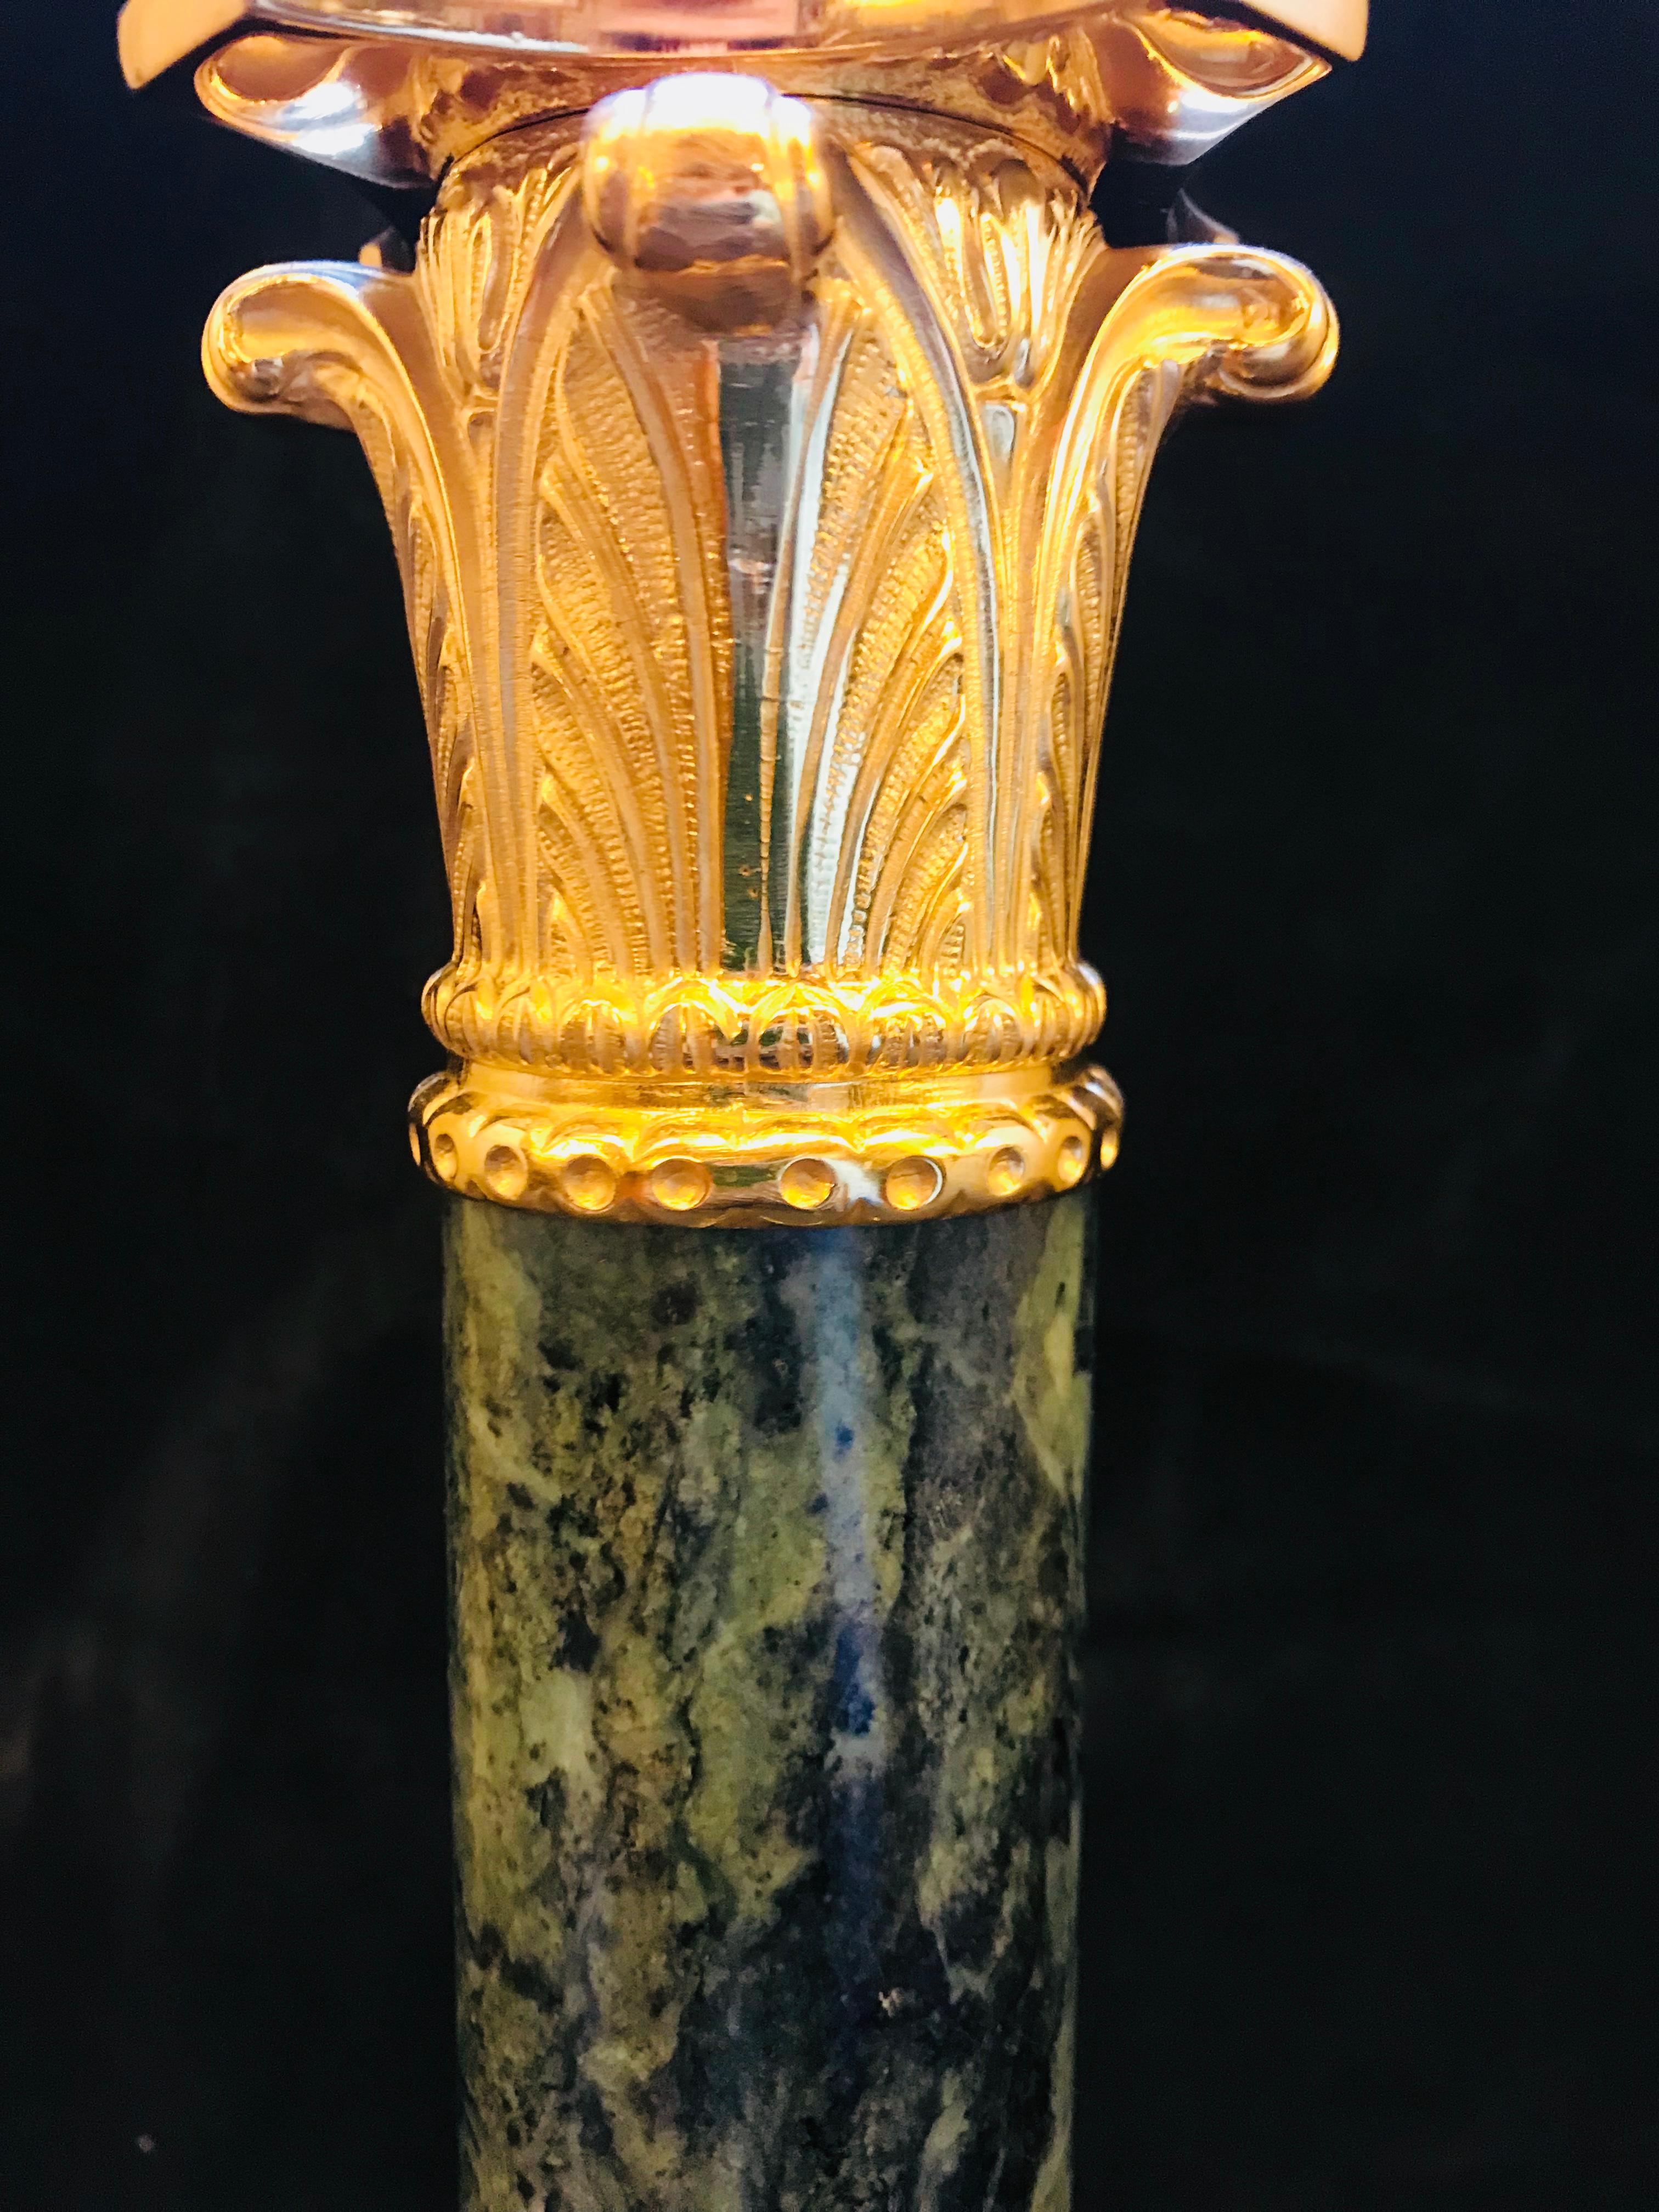 Diese elegante Lampe aus vergoldeter Bronze und schwarzem Marmor im neoklassischen Stil von Gherardo Degli Albizzi zeichnet sich durch hochwertige Verzierungen aus vergoldeter Bronze aus, wie z.B. das vollständig ziselierte Kapitell oder der Sockel